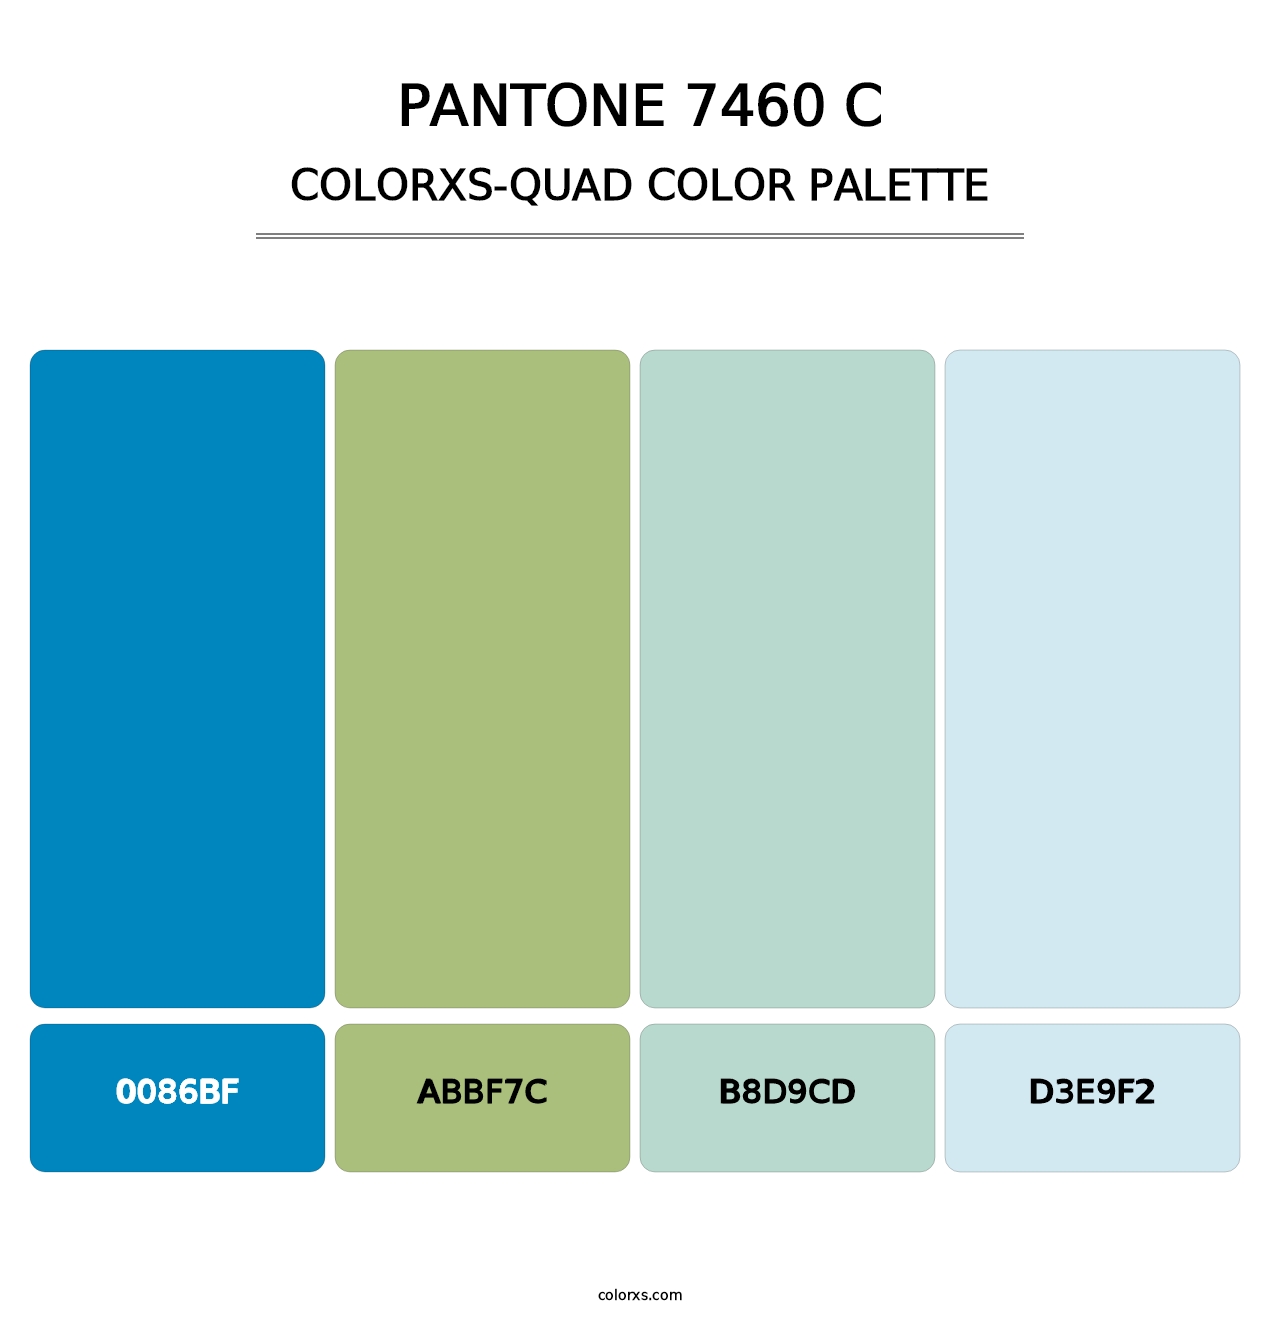 PANTONE 7460 C - Colorxs Quad Palette